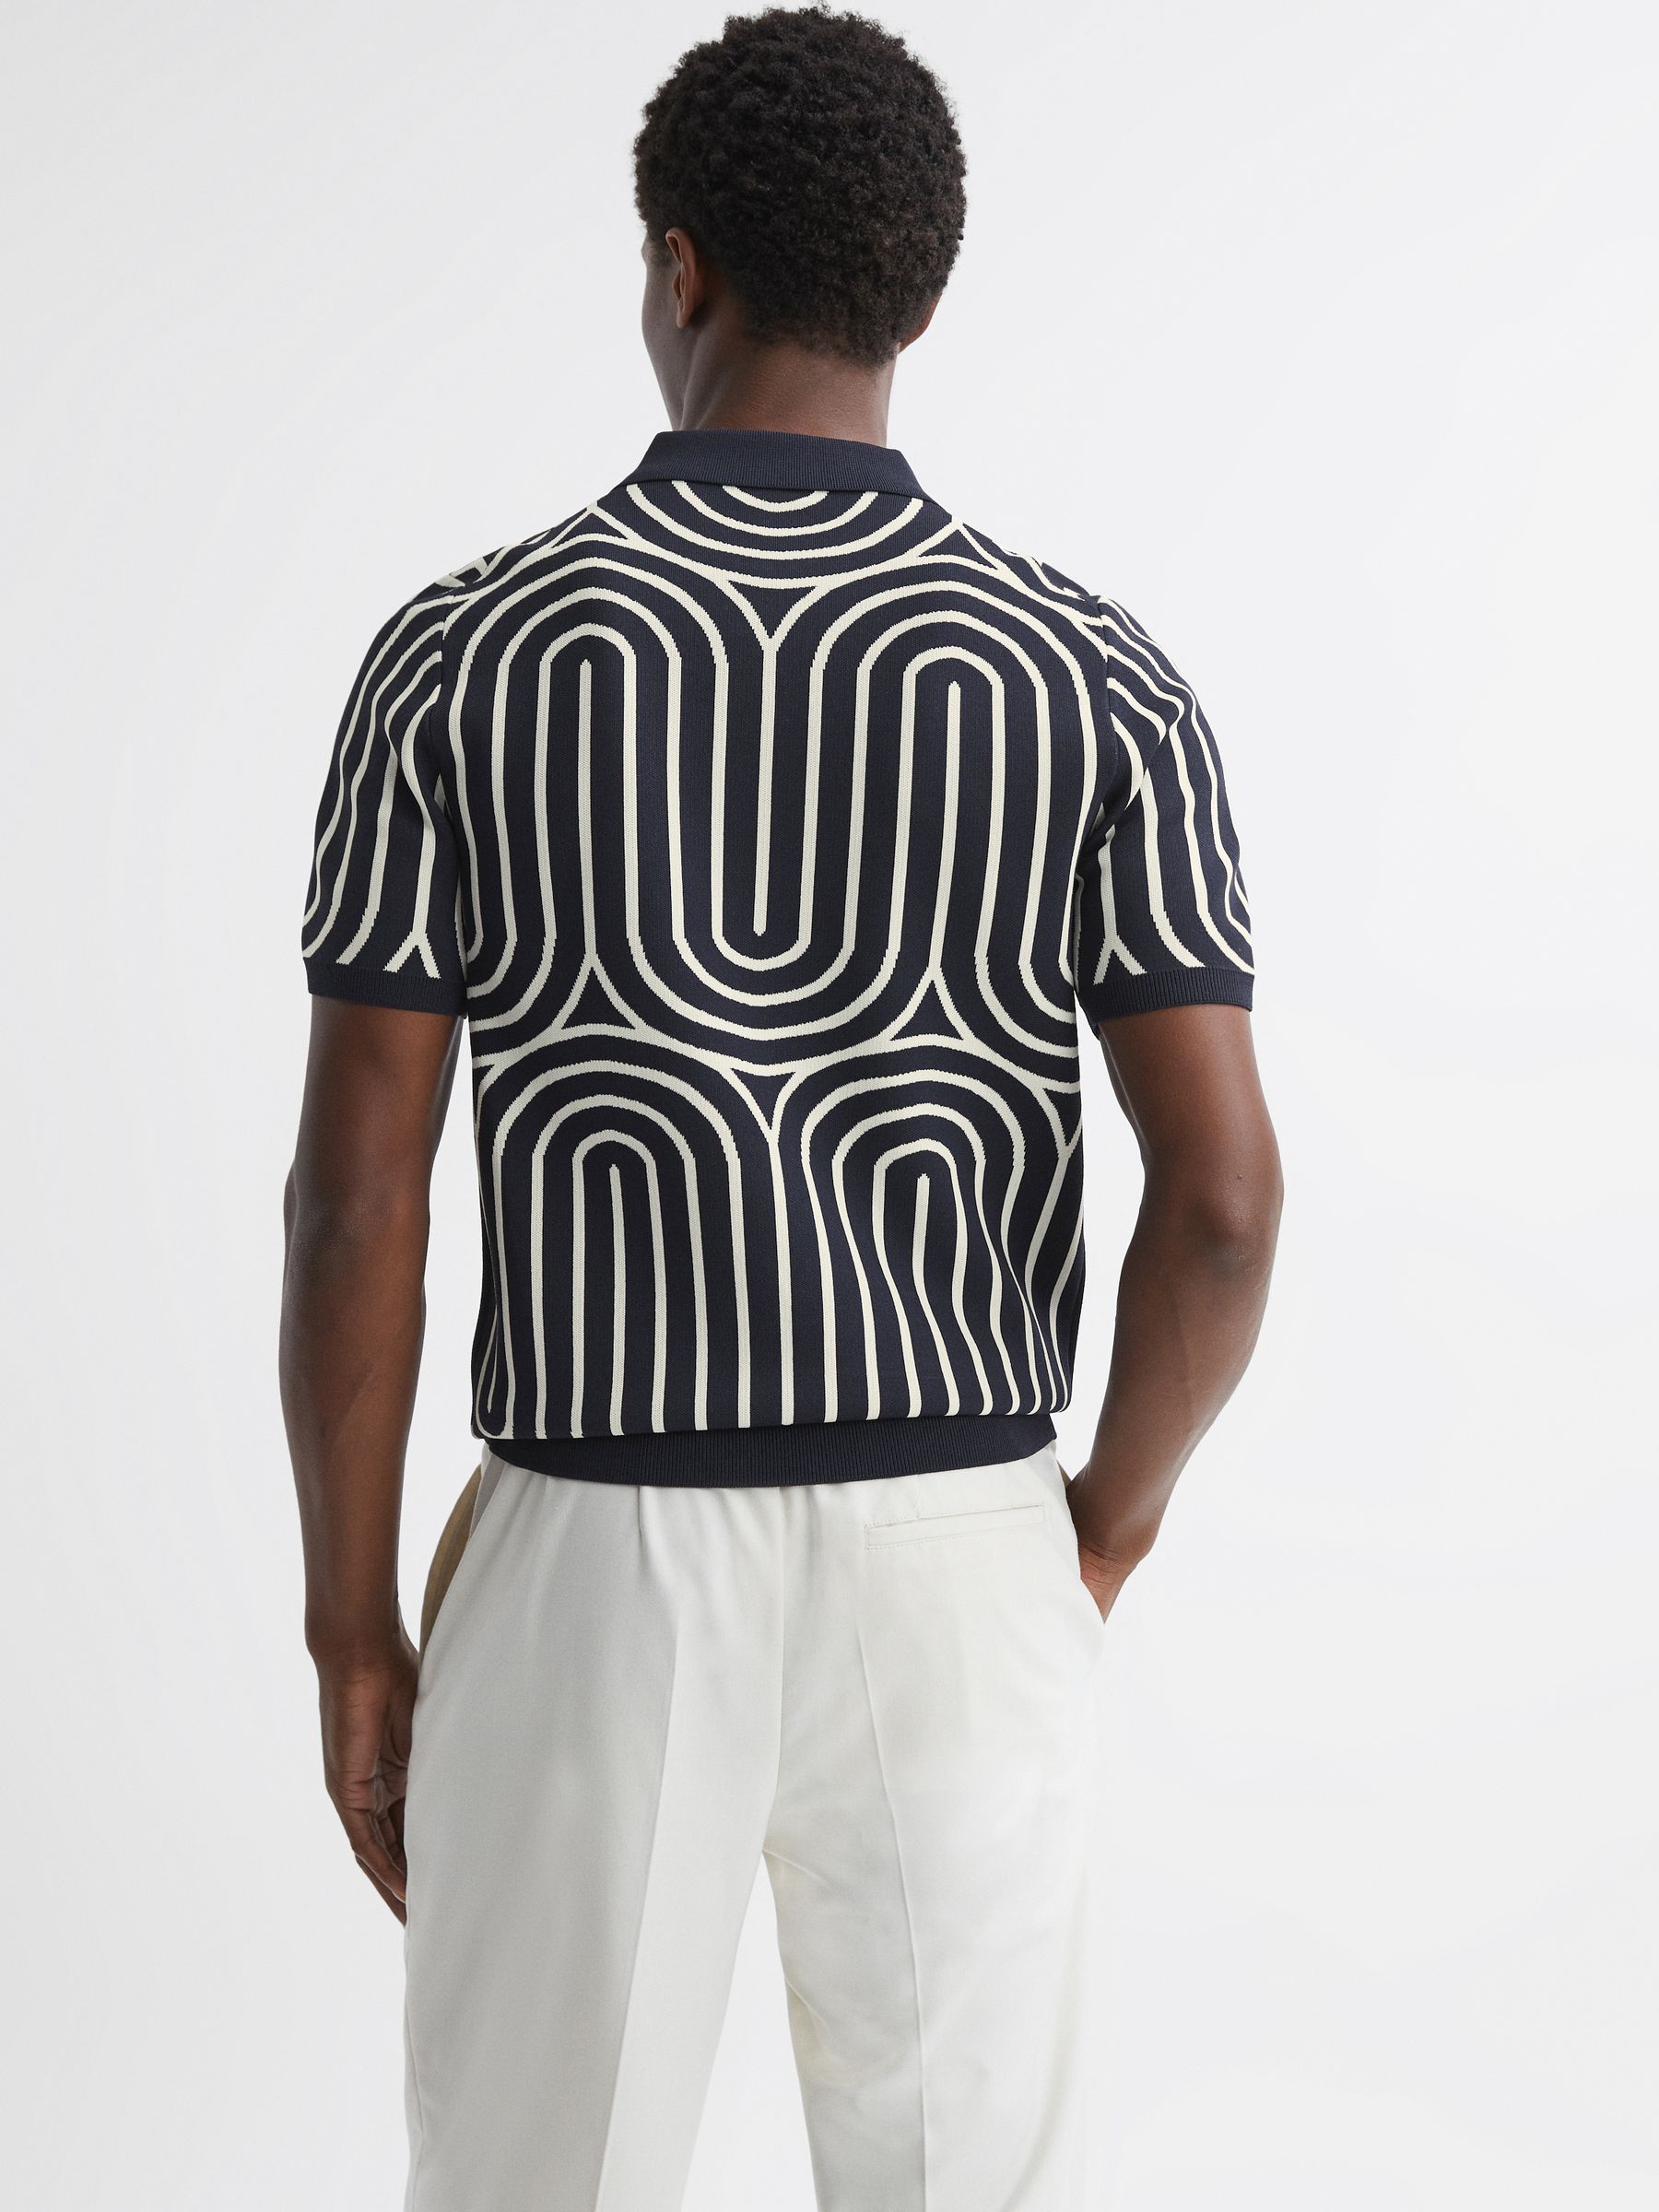 Reiss Maycross Half-Zip Striped Polo T-Shirt | REISS USA